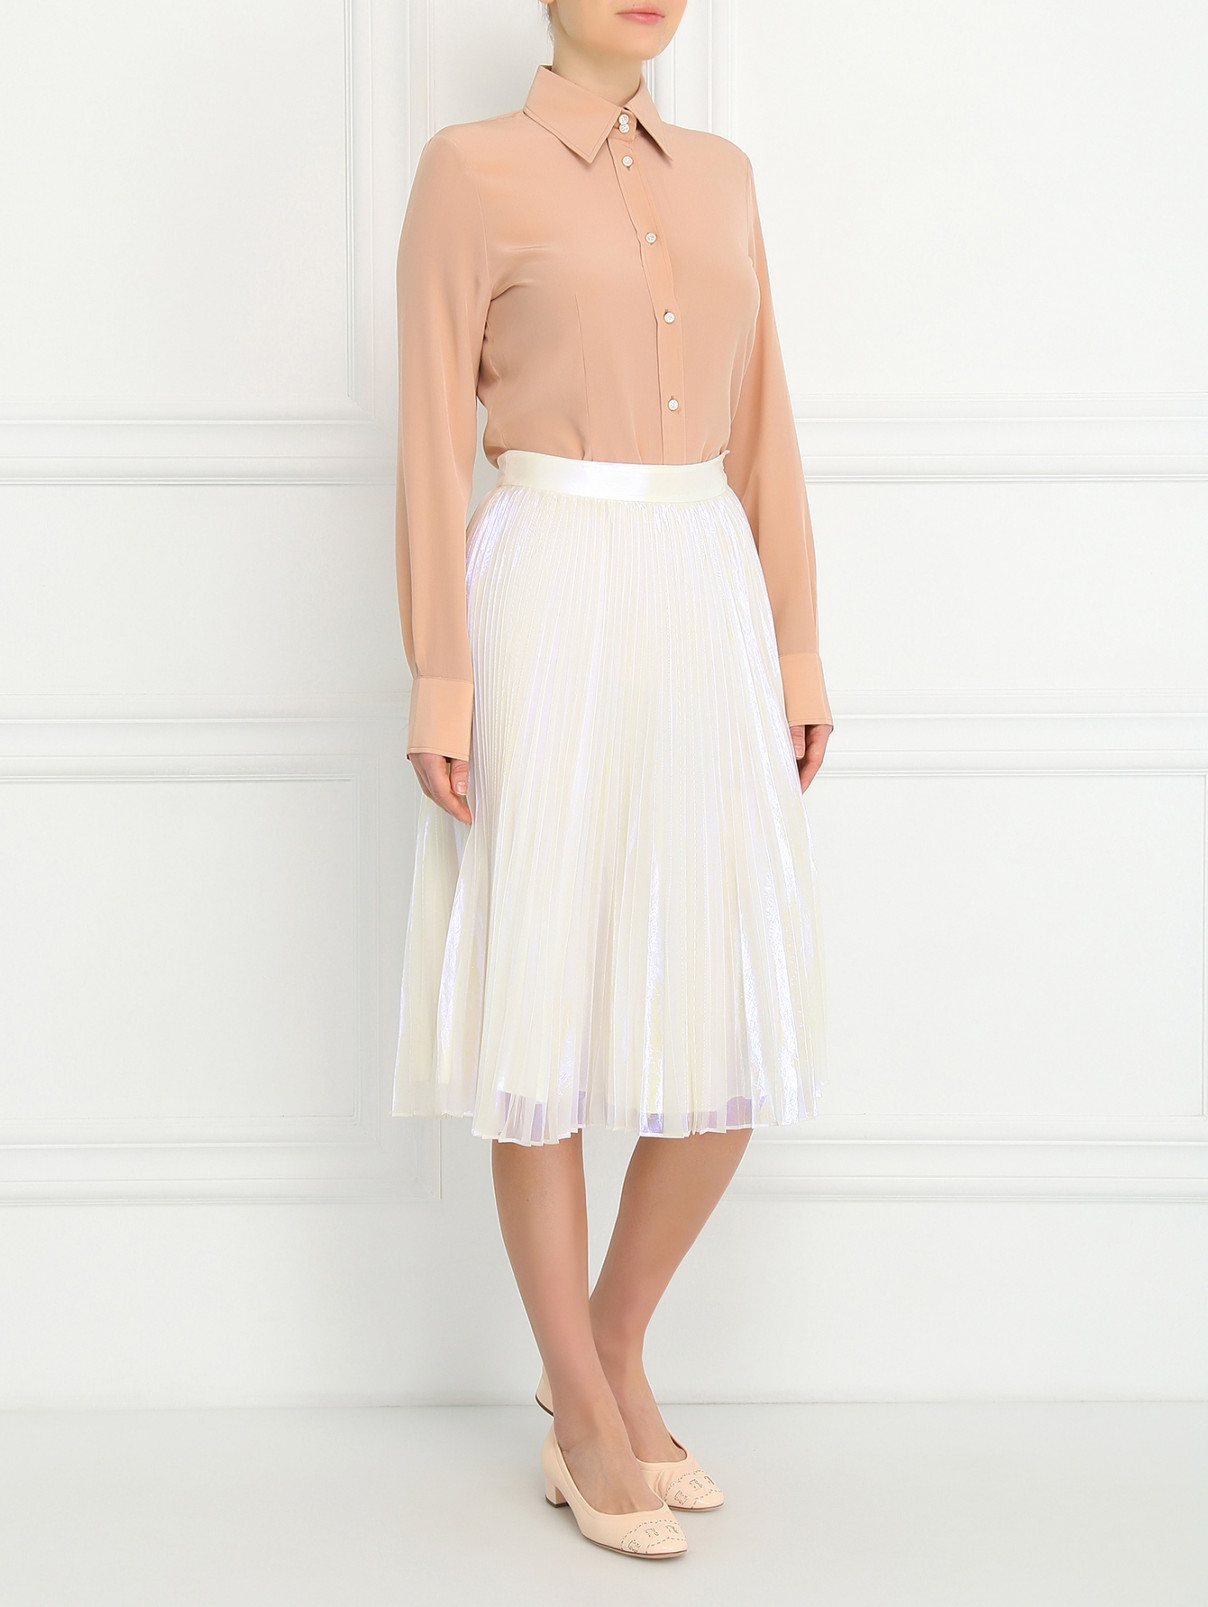 Плиссированная юбка-мини Marc by Marc Jacobs  –  Модель Общий вид  – Цвет:  Белый